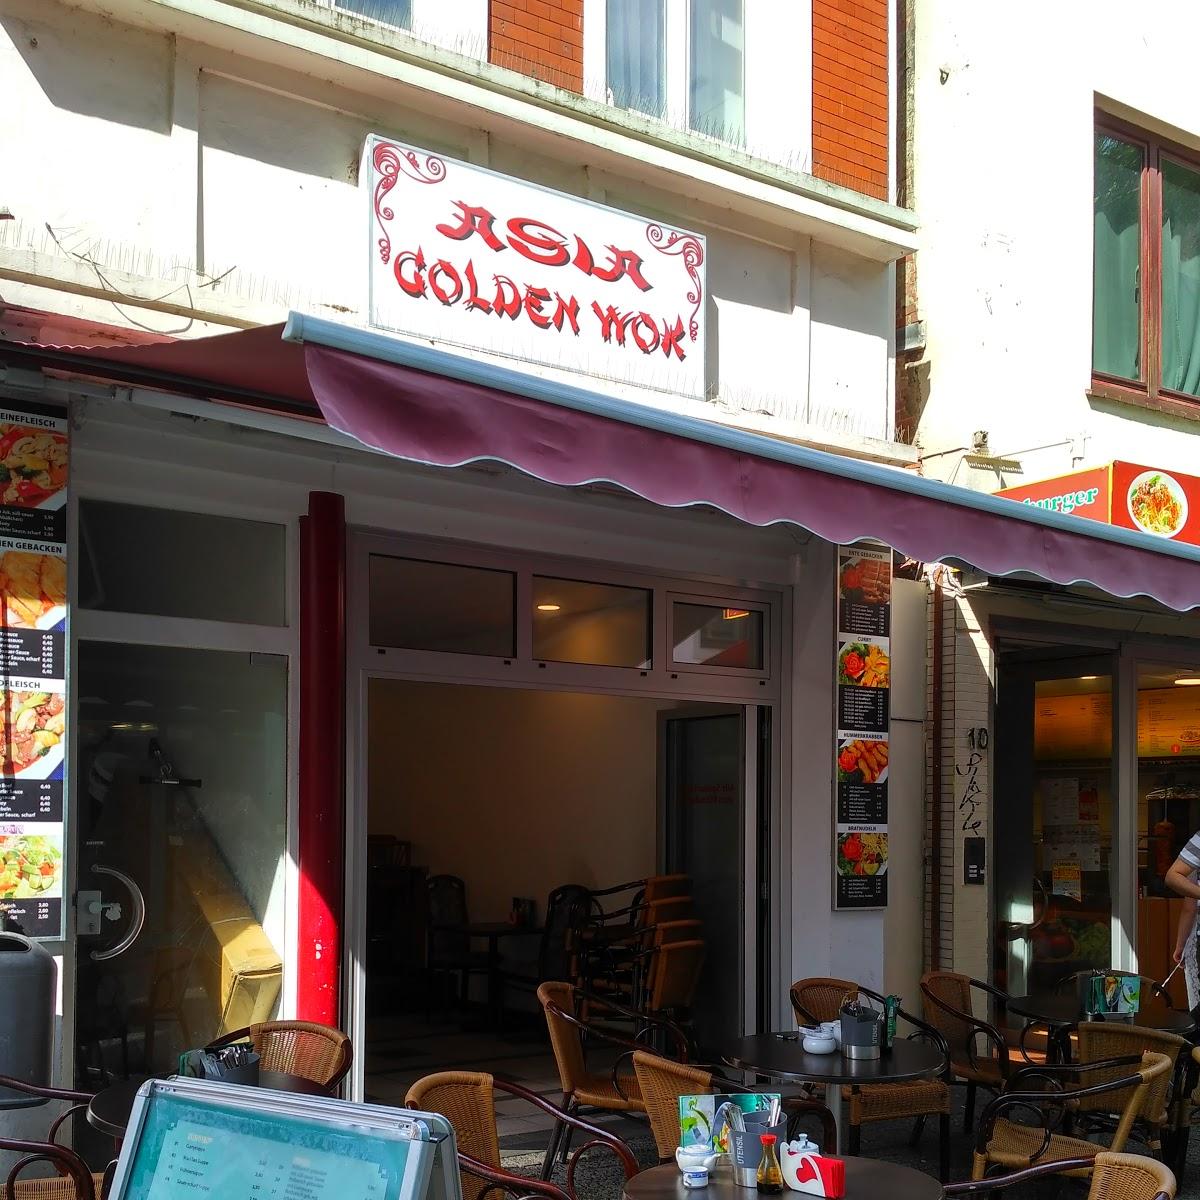 Restaurant "Golden Wok" in Oldenburg